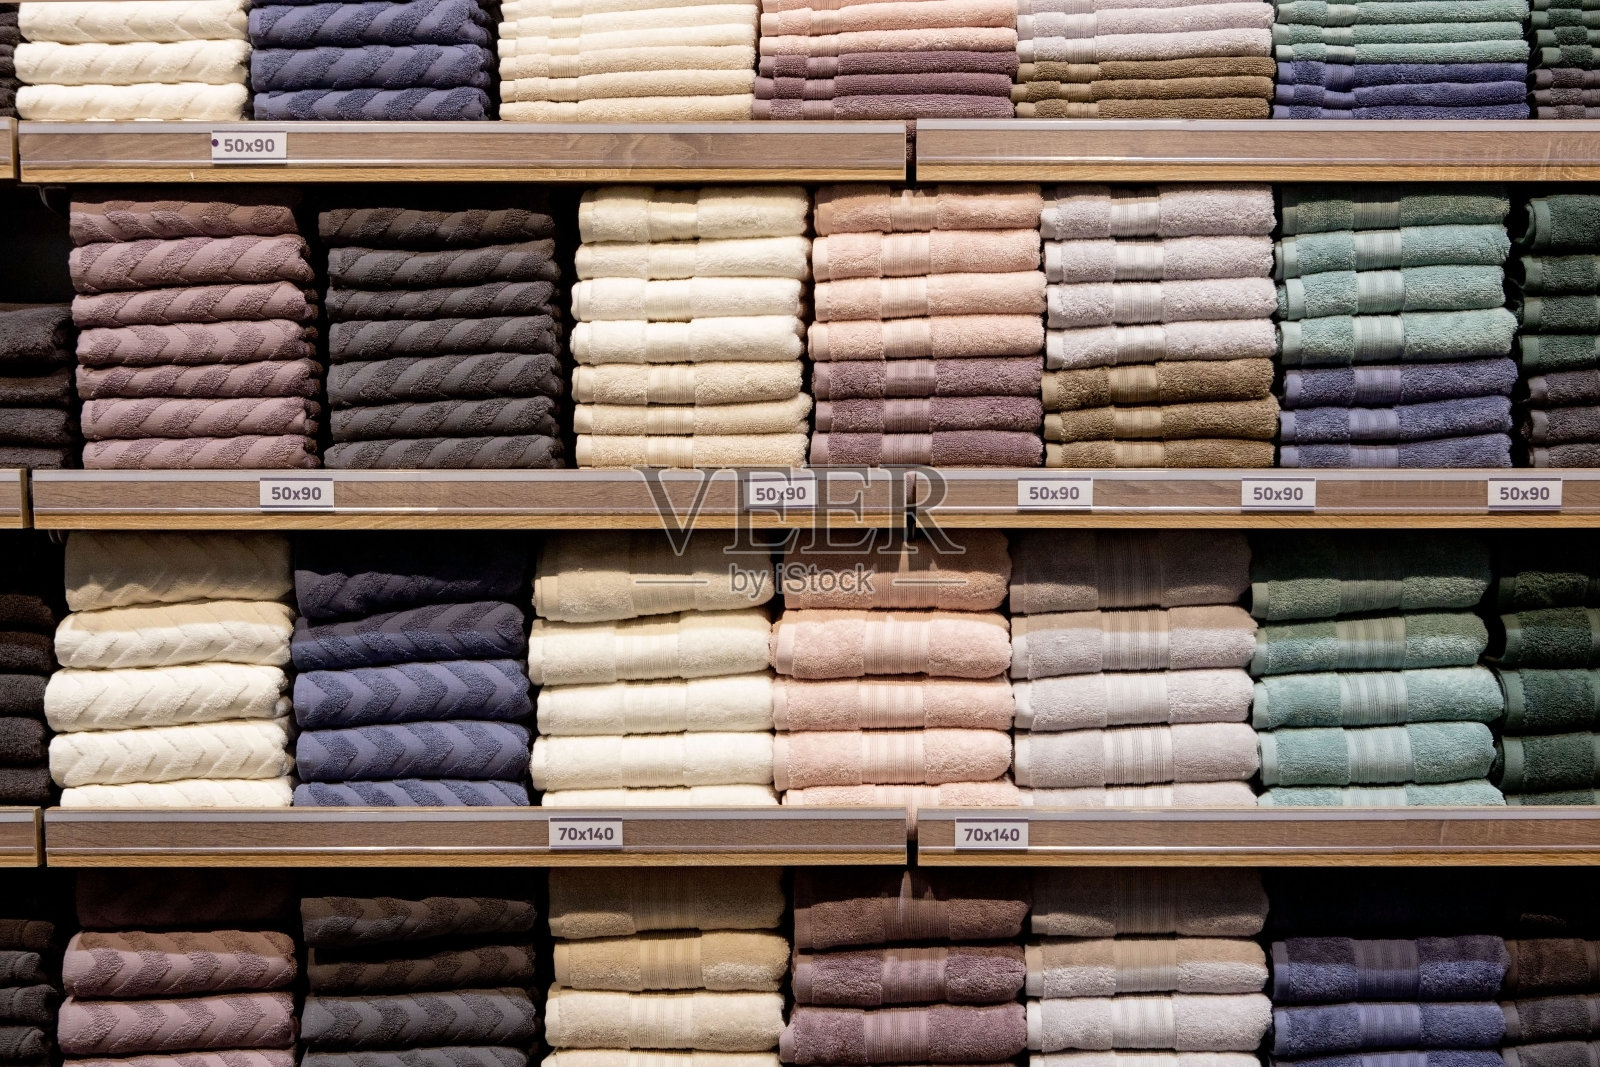 折叠的五彩毛巾放在架子上。叠得整整齐齐的衣服。衣架上的衣服保暖。折叠整齐的棉布毛巾照片摄影图片